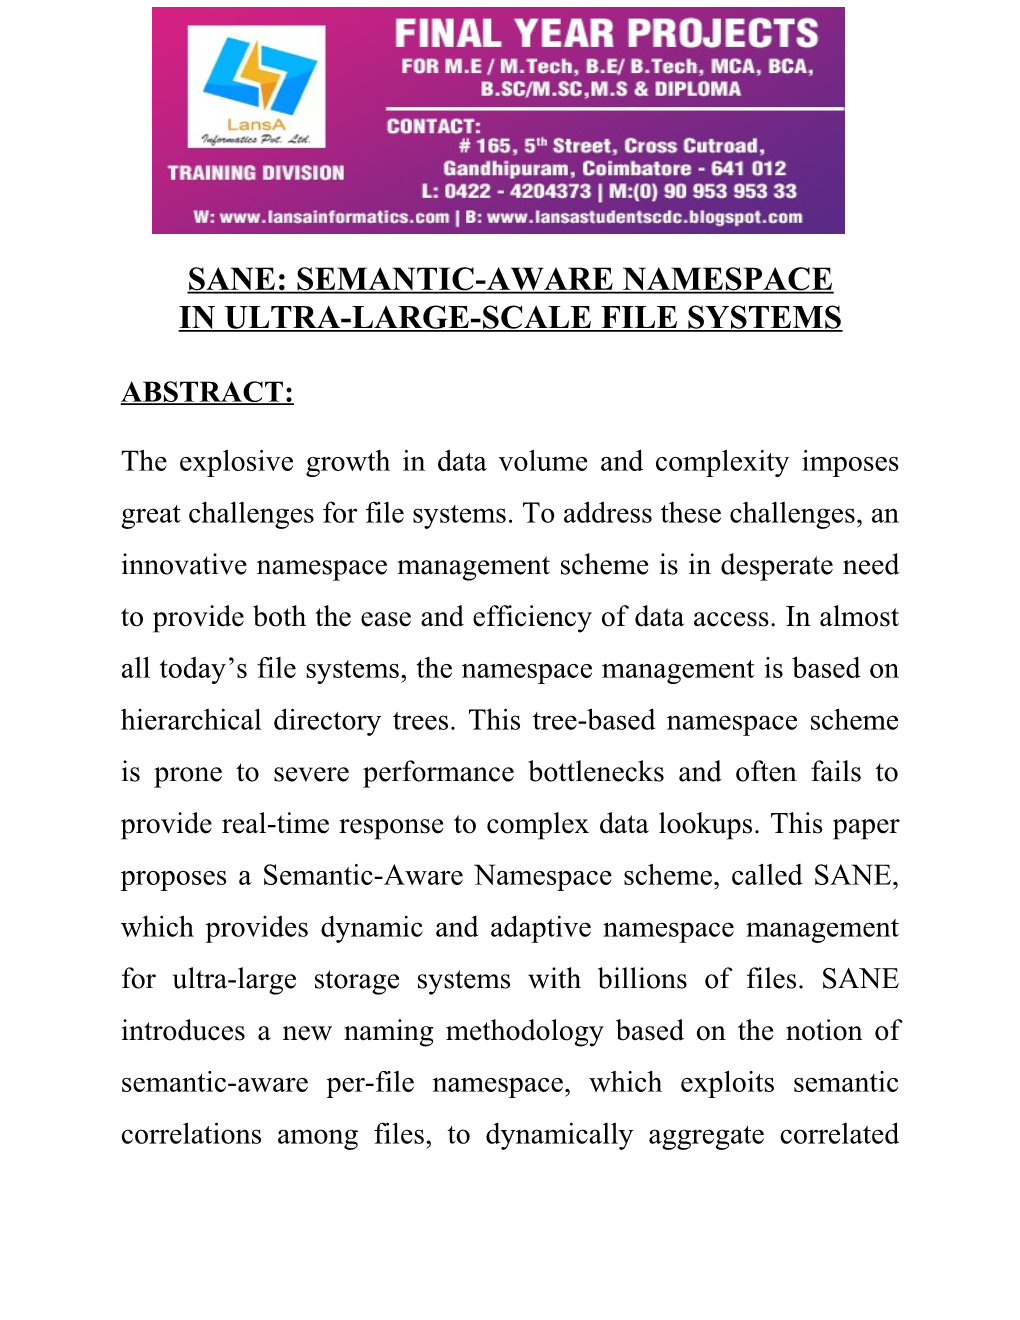 Sane: Semantic-Aware Namespace